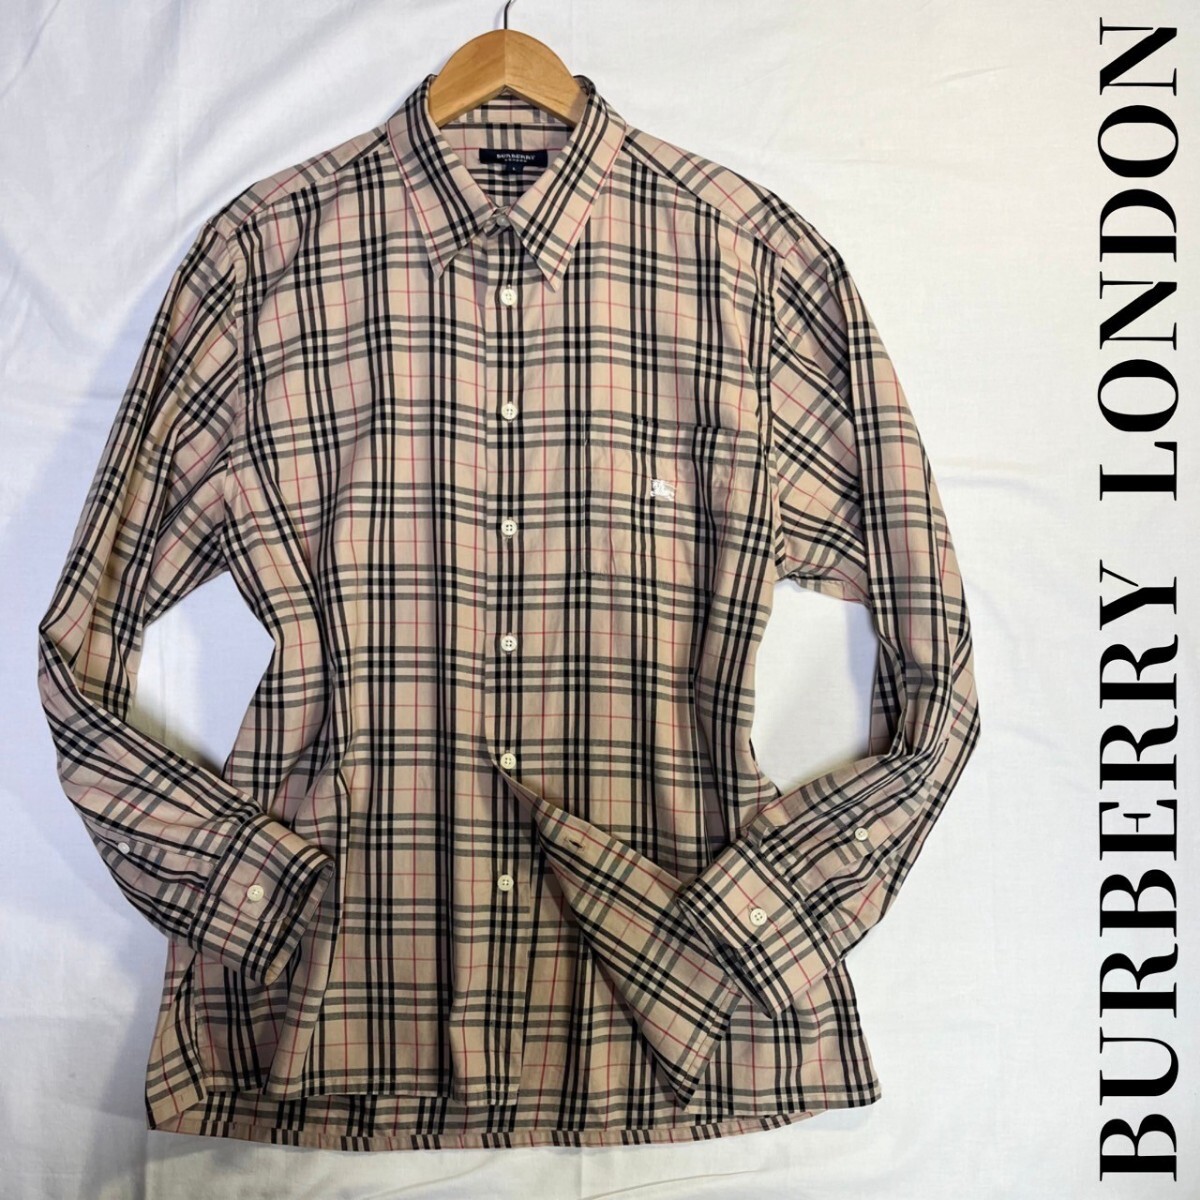 . дорога noba проверка [BURBERRY LONDON] рубашка с длинным рукавом шланг Logo кнопка печать хлопок 100% размер L